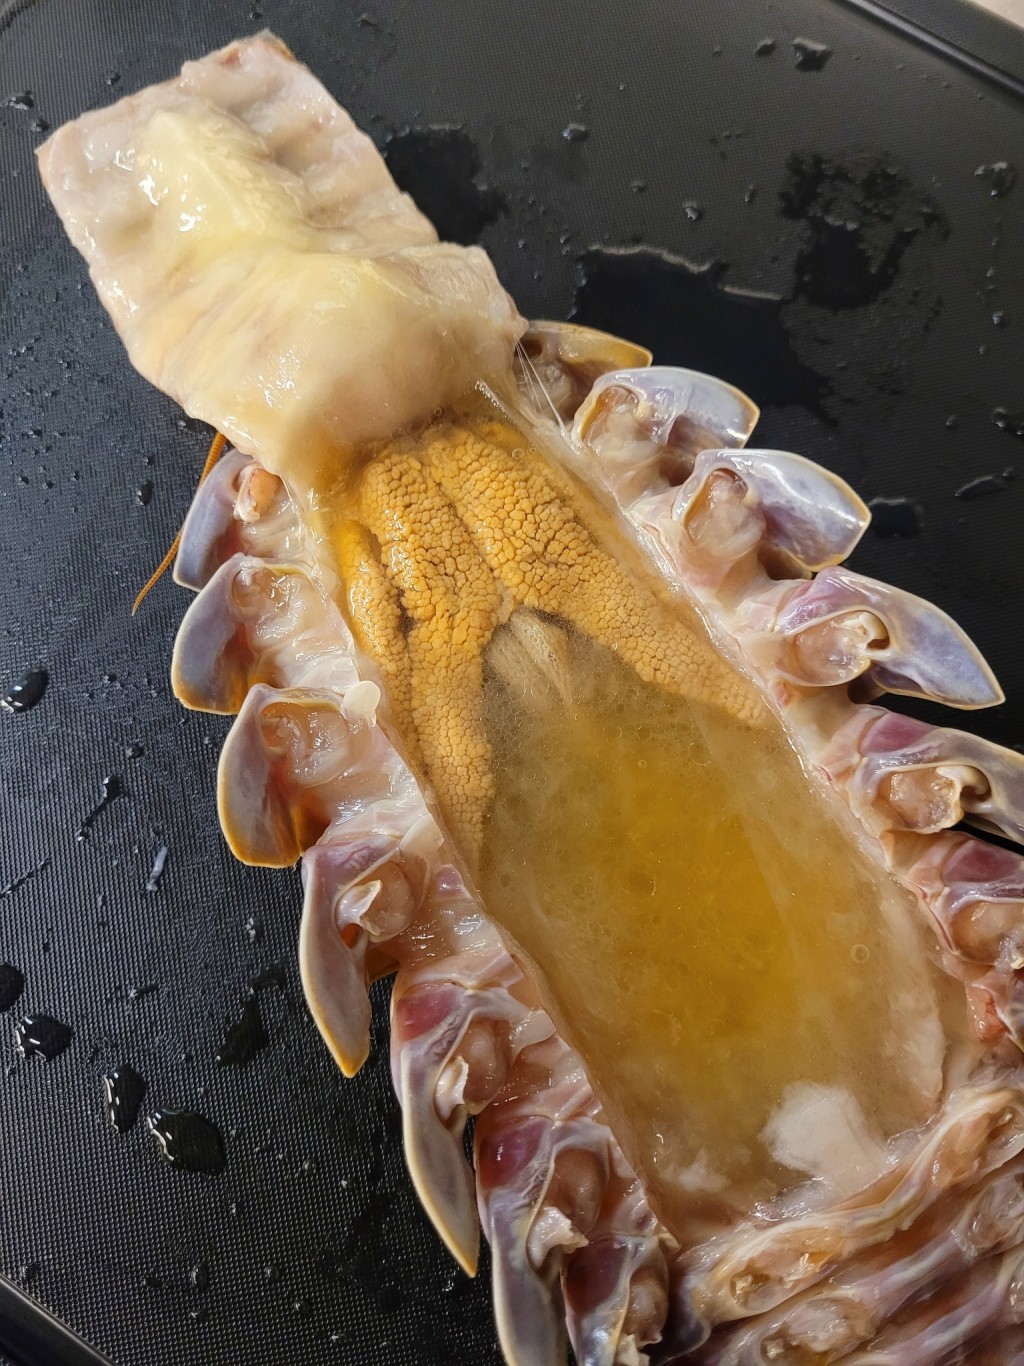 黃色的腺體吃起來有類似蟹黃蟹膏的口感與味道（圖片來源: 拉麵公子FB）